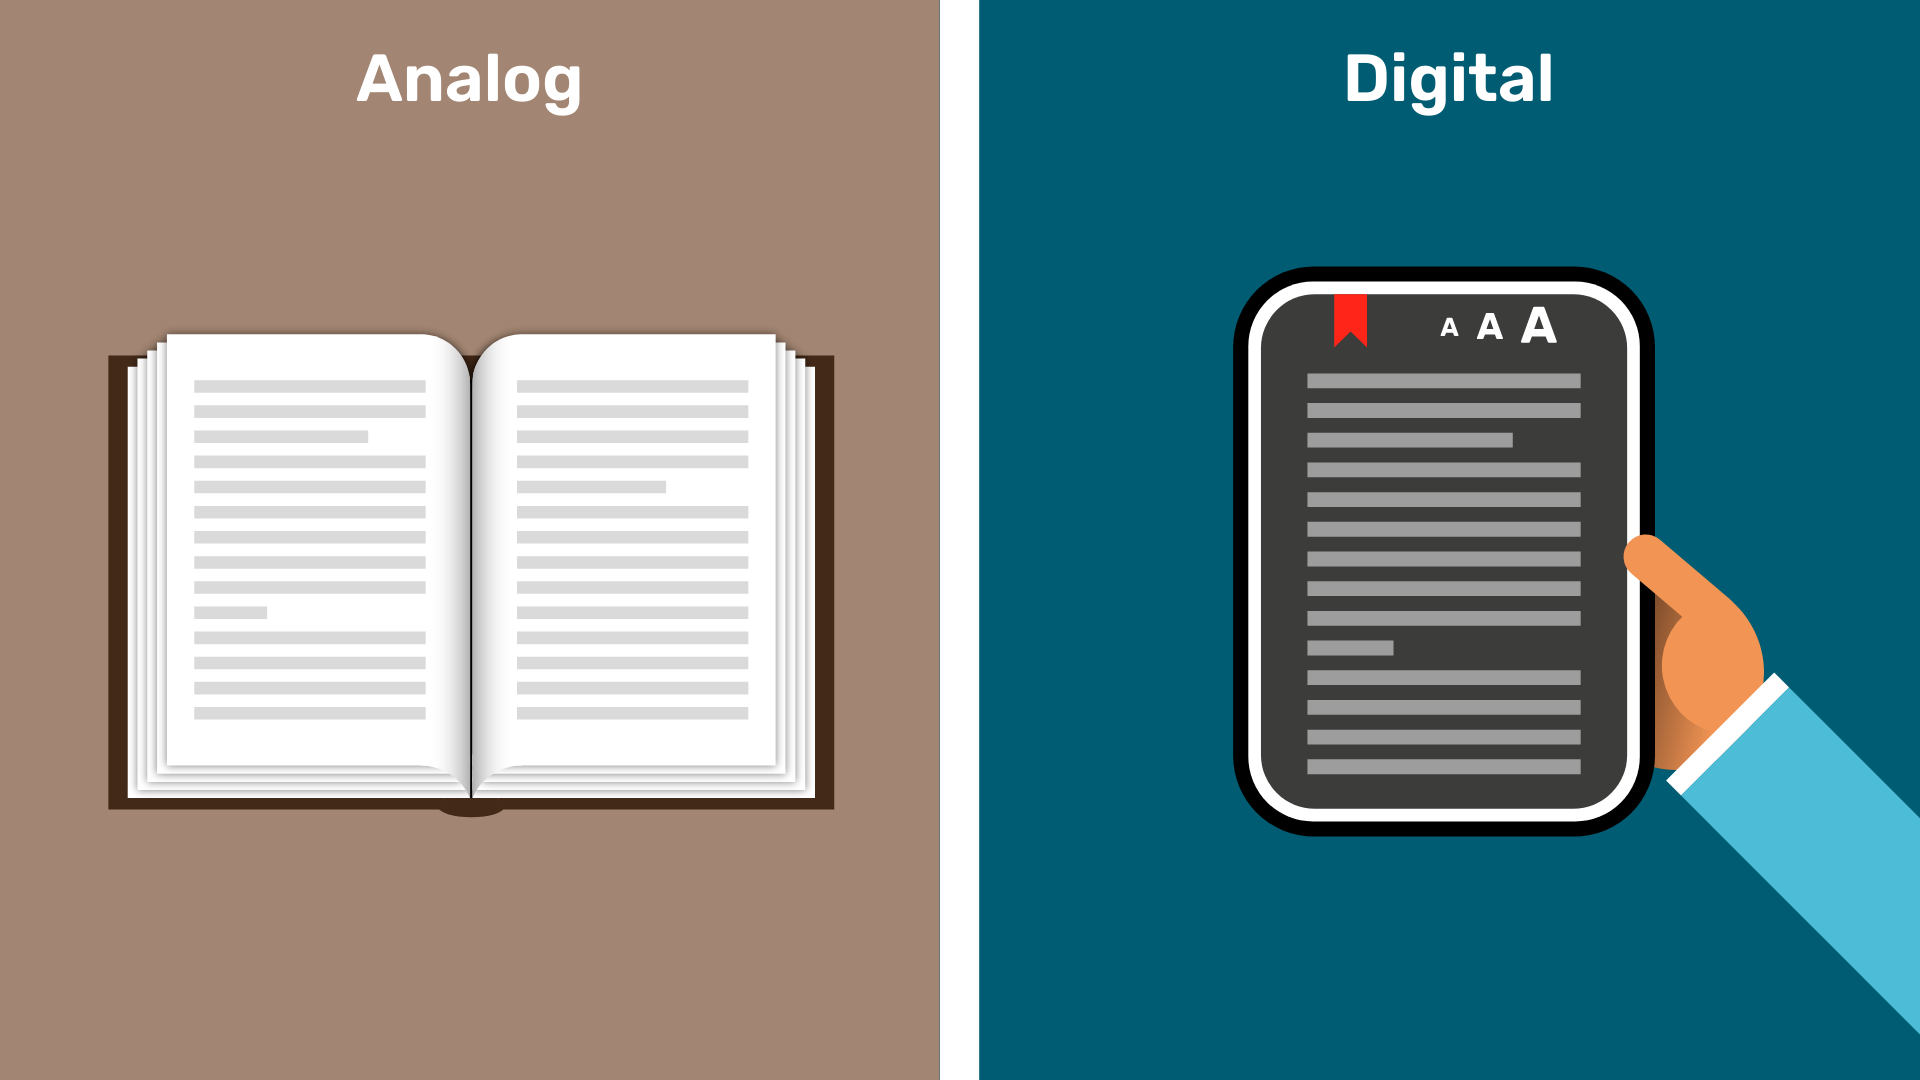 Auf der linken Seite ist ein aufgeschlagenes Buch, auf der rechten Seite eine Hand, die einen eBook-Reader hält.